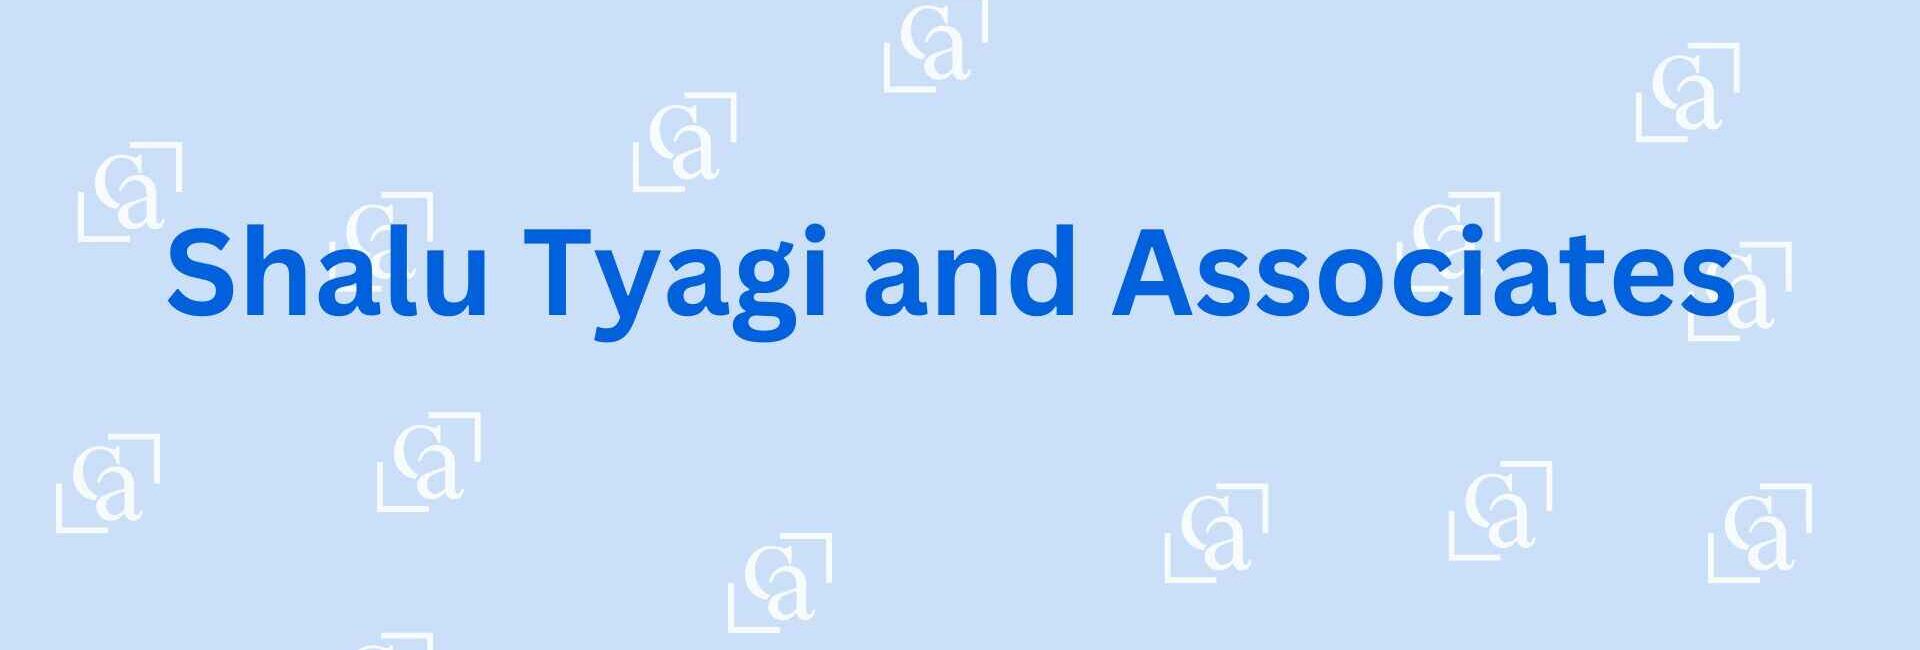 Shalu Tyagi & Associates - Chartered accountants in Noida